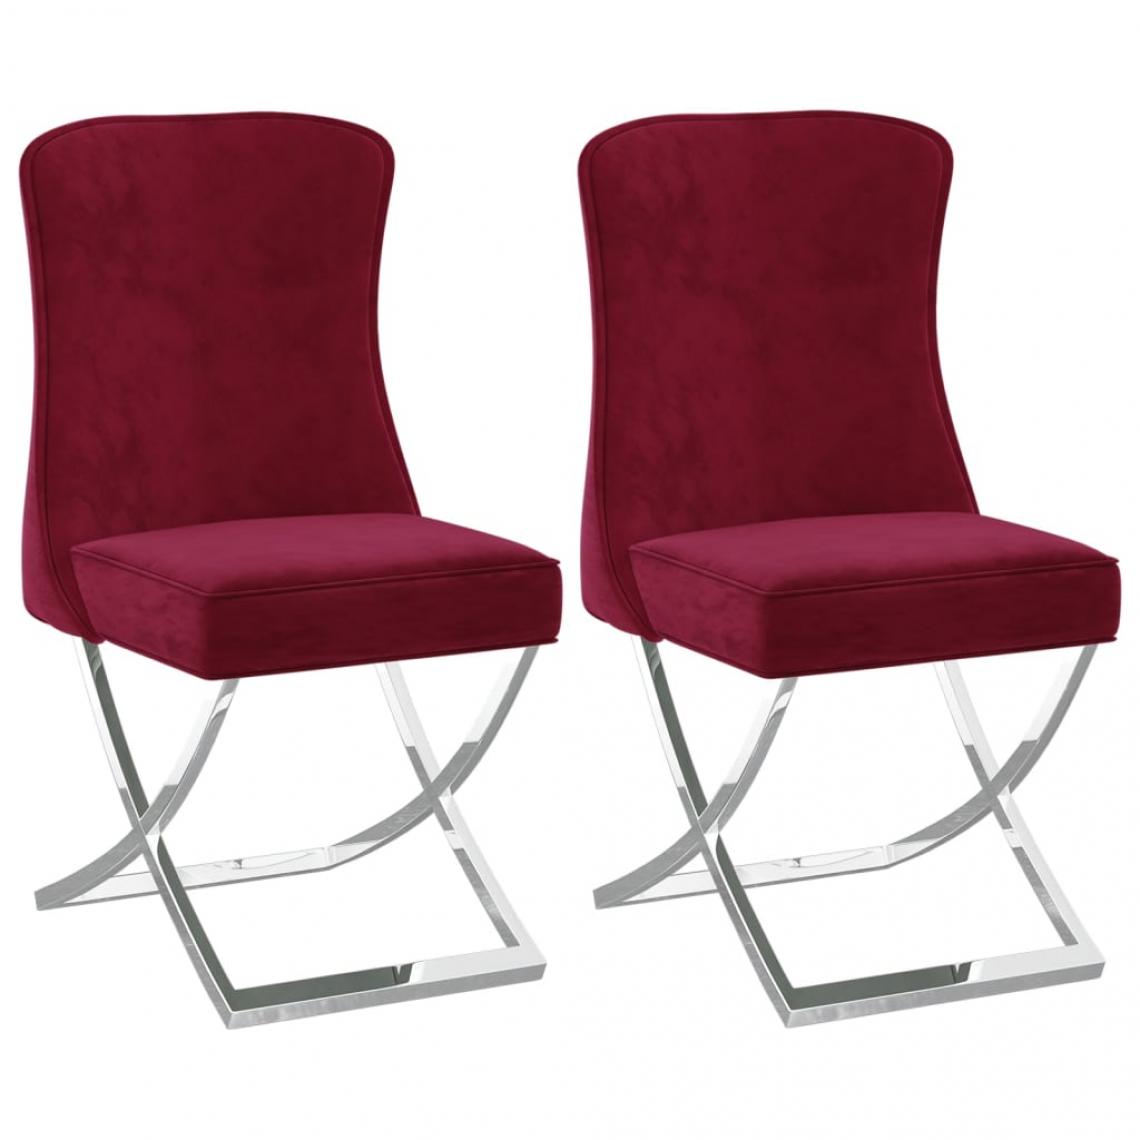 Decoshop26 - Lot de 2 chaises de salle à manger cuisine 53x52x98 cm design moderne velours bordeaux et inox CDS020293 - Chaises